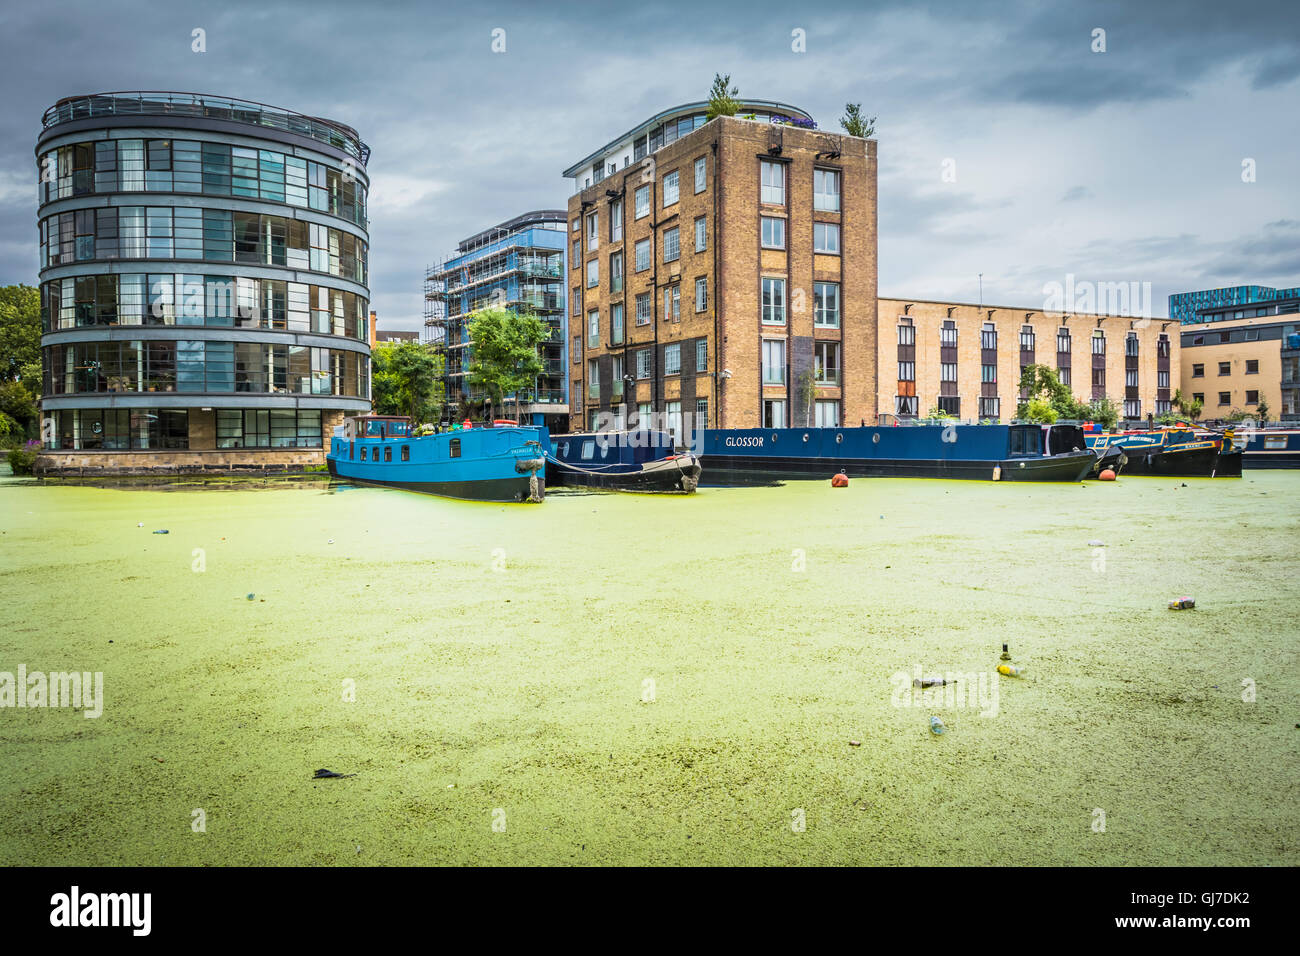 Une barge de rivière bleue entourée d'algues vertes épaisses à Battlebridge Basin Kings Cross, Londres, NW1, Angleterre, Royaume-Uni Banque D'Images